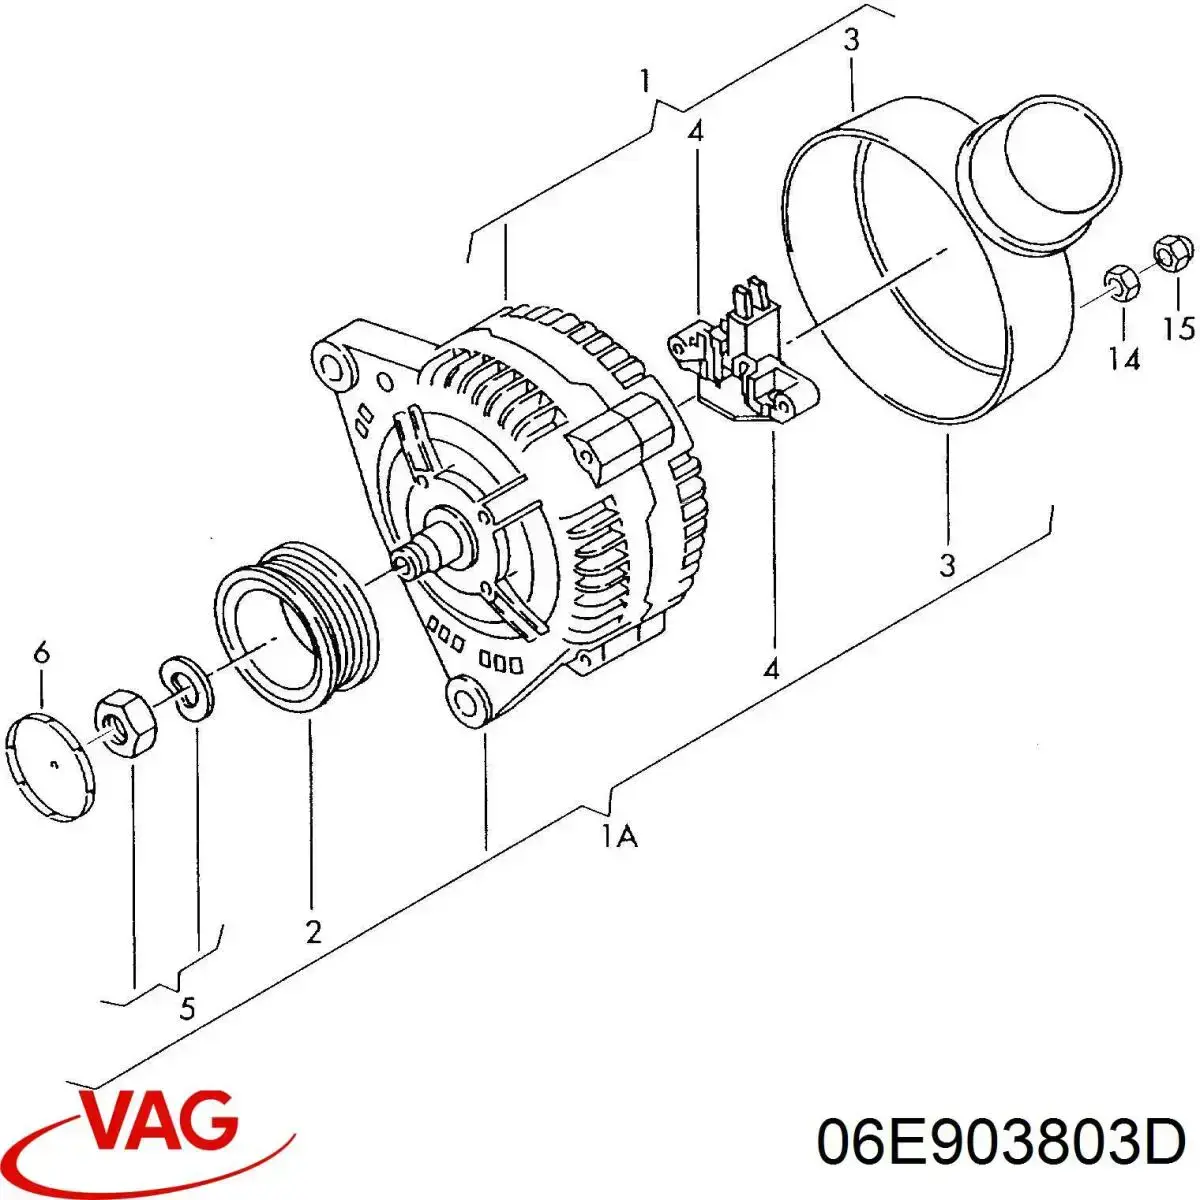 06E903803D VAG relê-regulador do gerador (relê de carregamento)